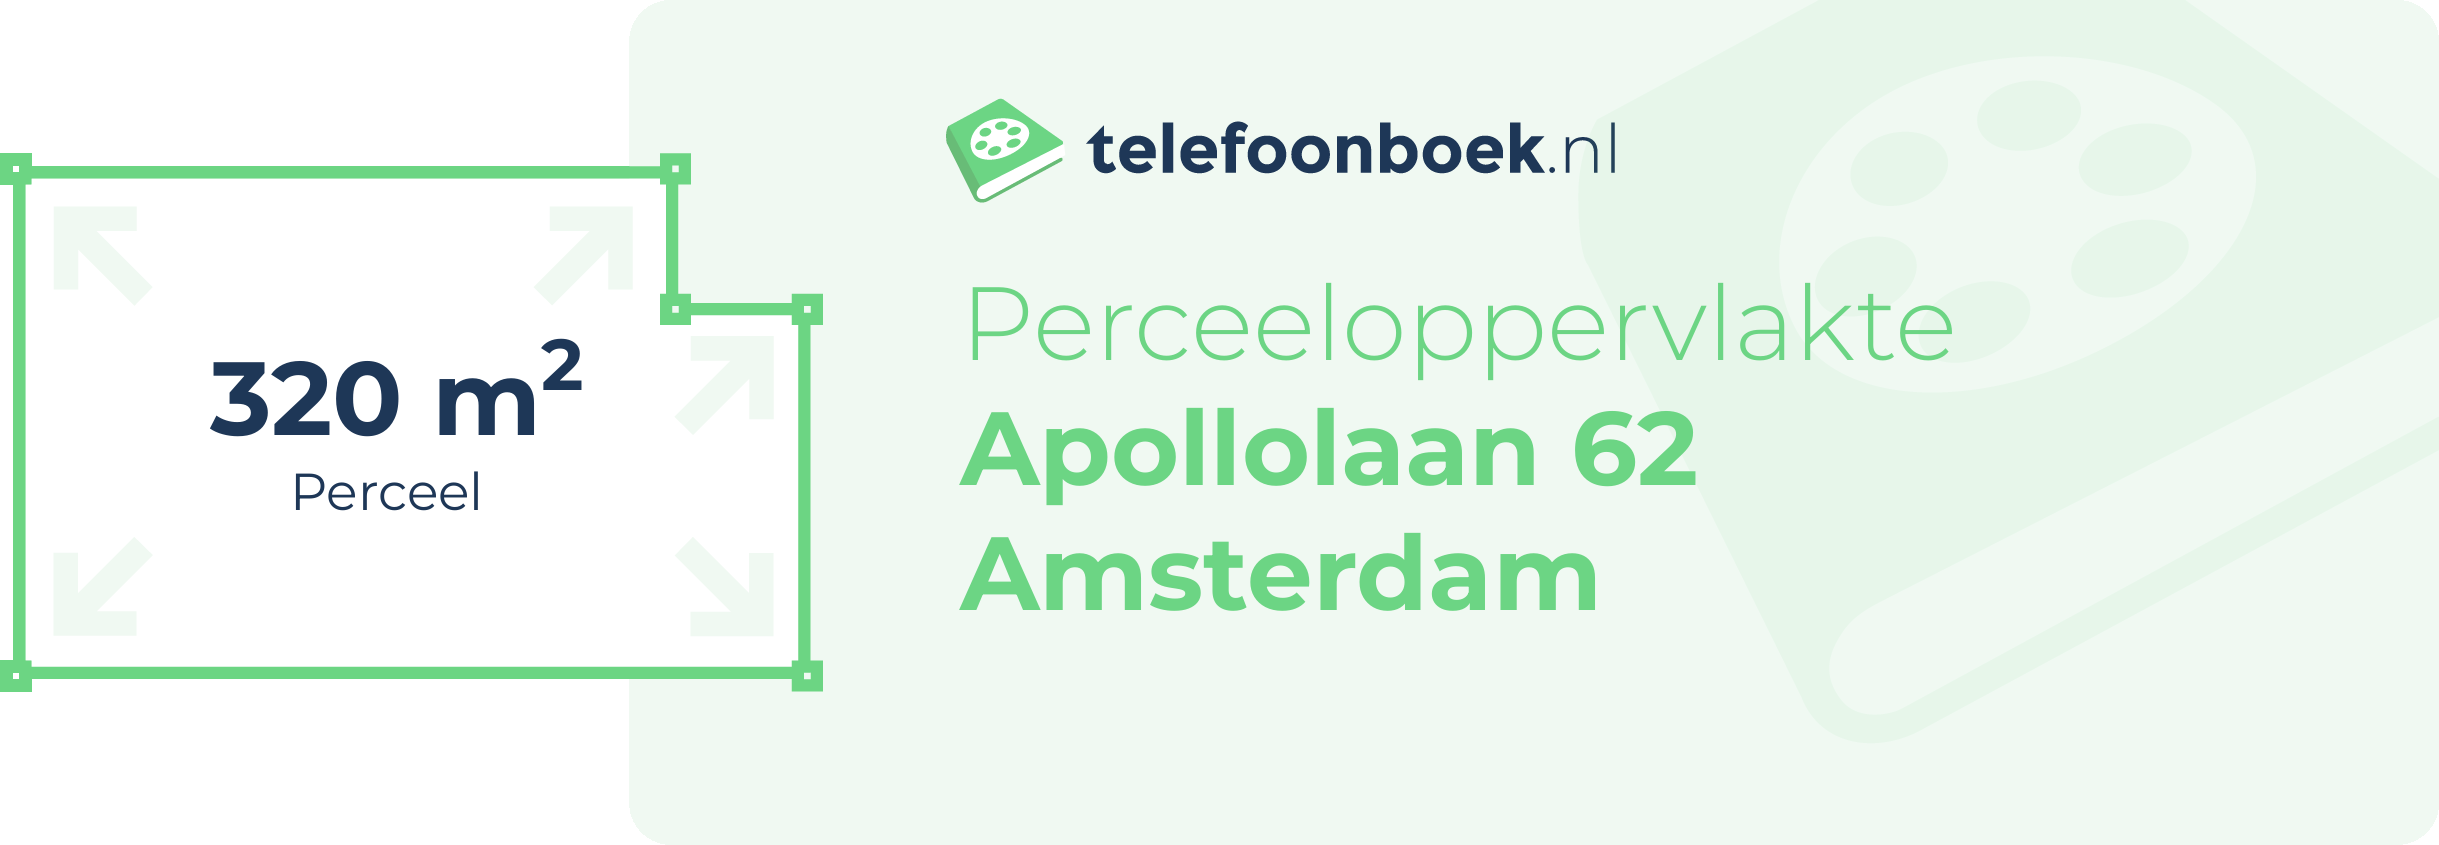 Perceeloppervlakte Apollolaan 62 Amsterdam